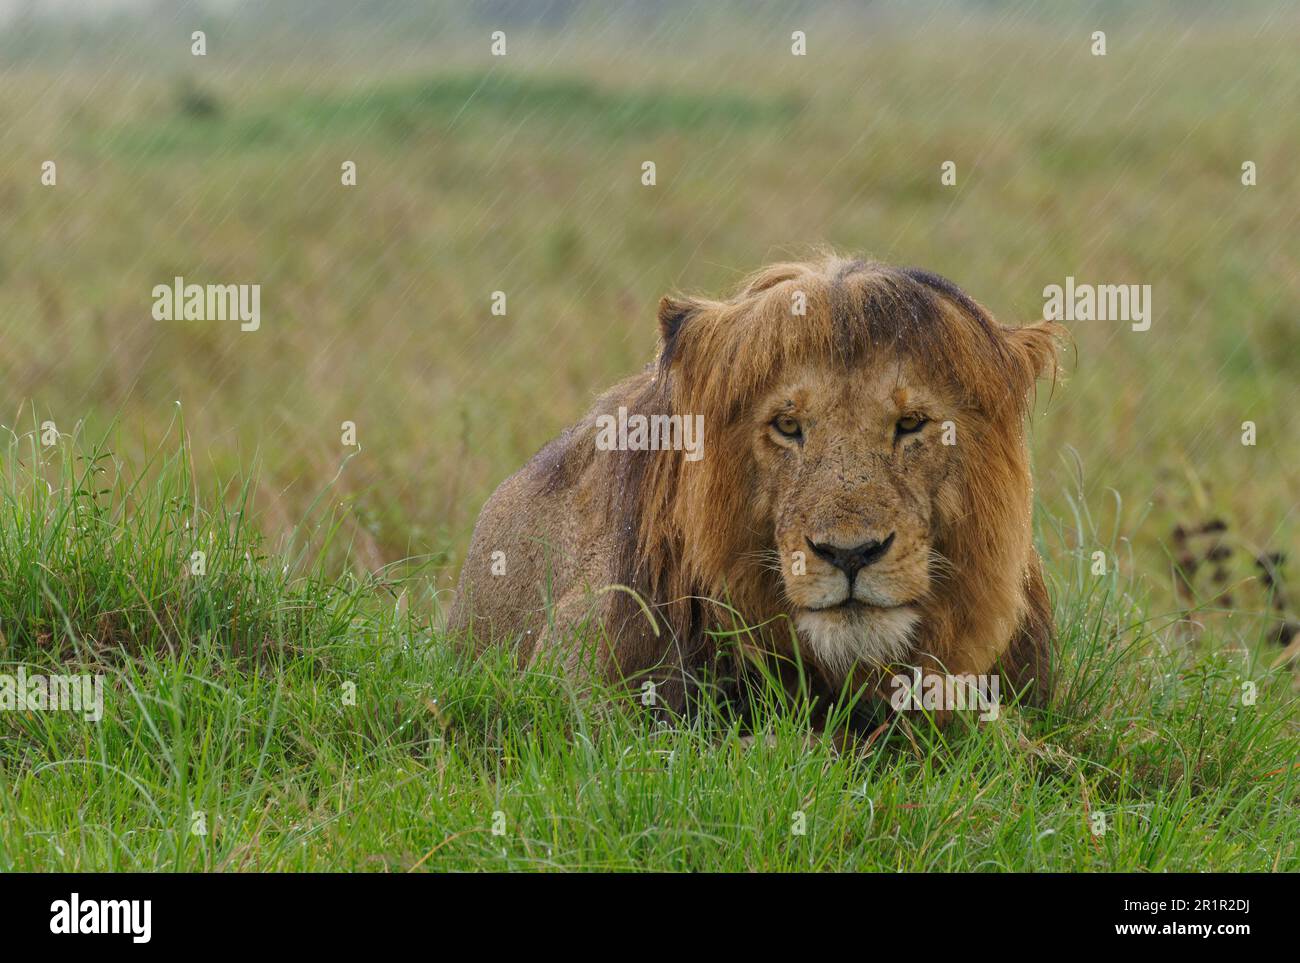 Lion fourré (Panthera leo) dans une forte descente dans la savane d'herbe, sanctuaire de la faune de Maasai Mara, Kenya. Banque D'Images